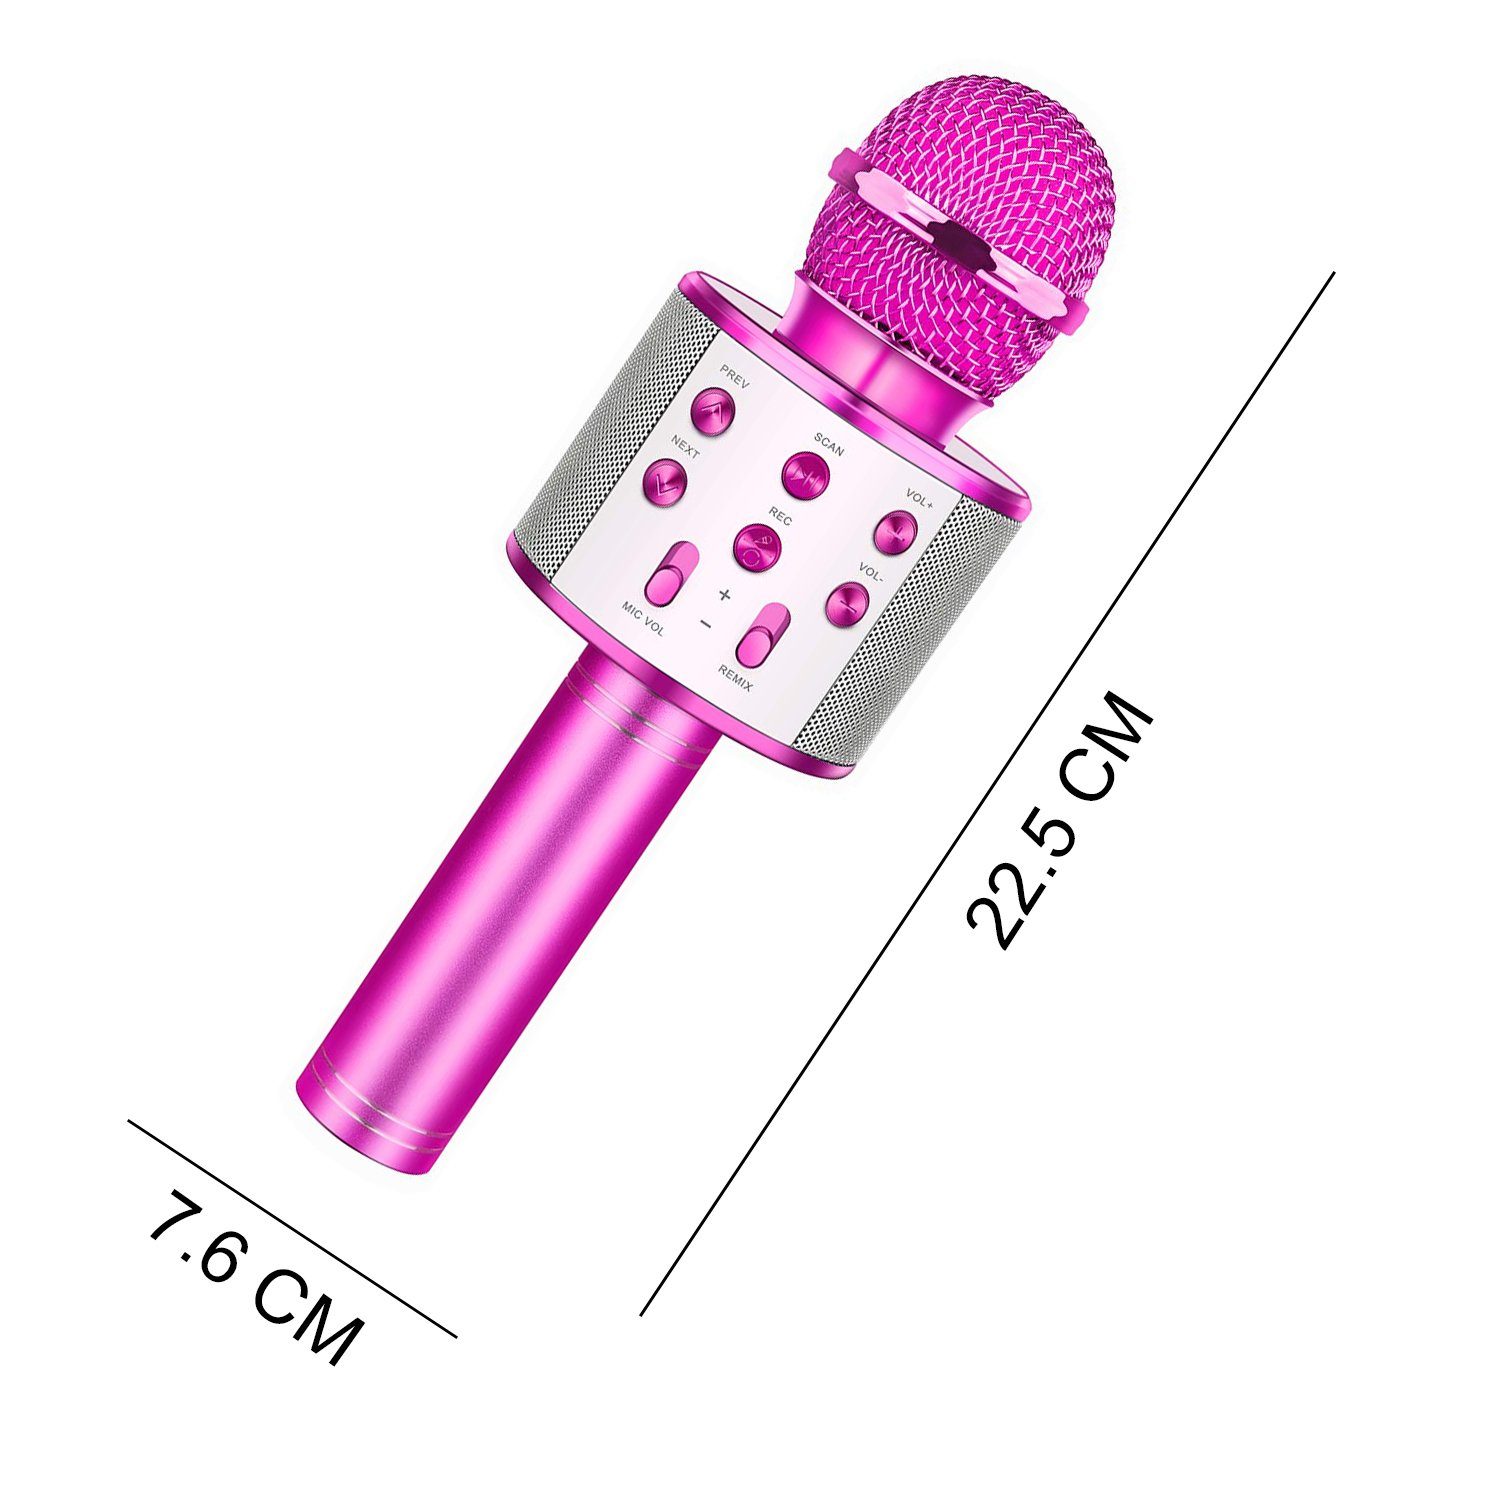 Blau Bluetooth Karaoke Mikrofon Drahtlose Bluetooth Mikrofon mit Lautsprecher für Sprach und Gesangsaufnahmen,Kompatibel mit Android IOS PC 